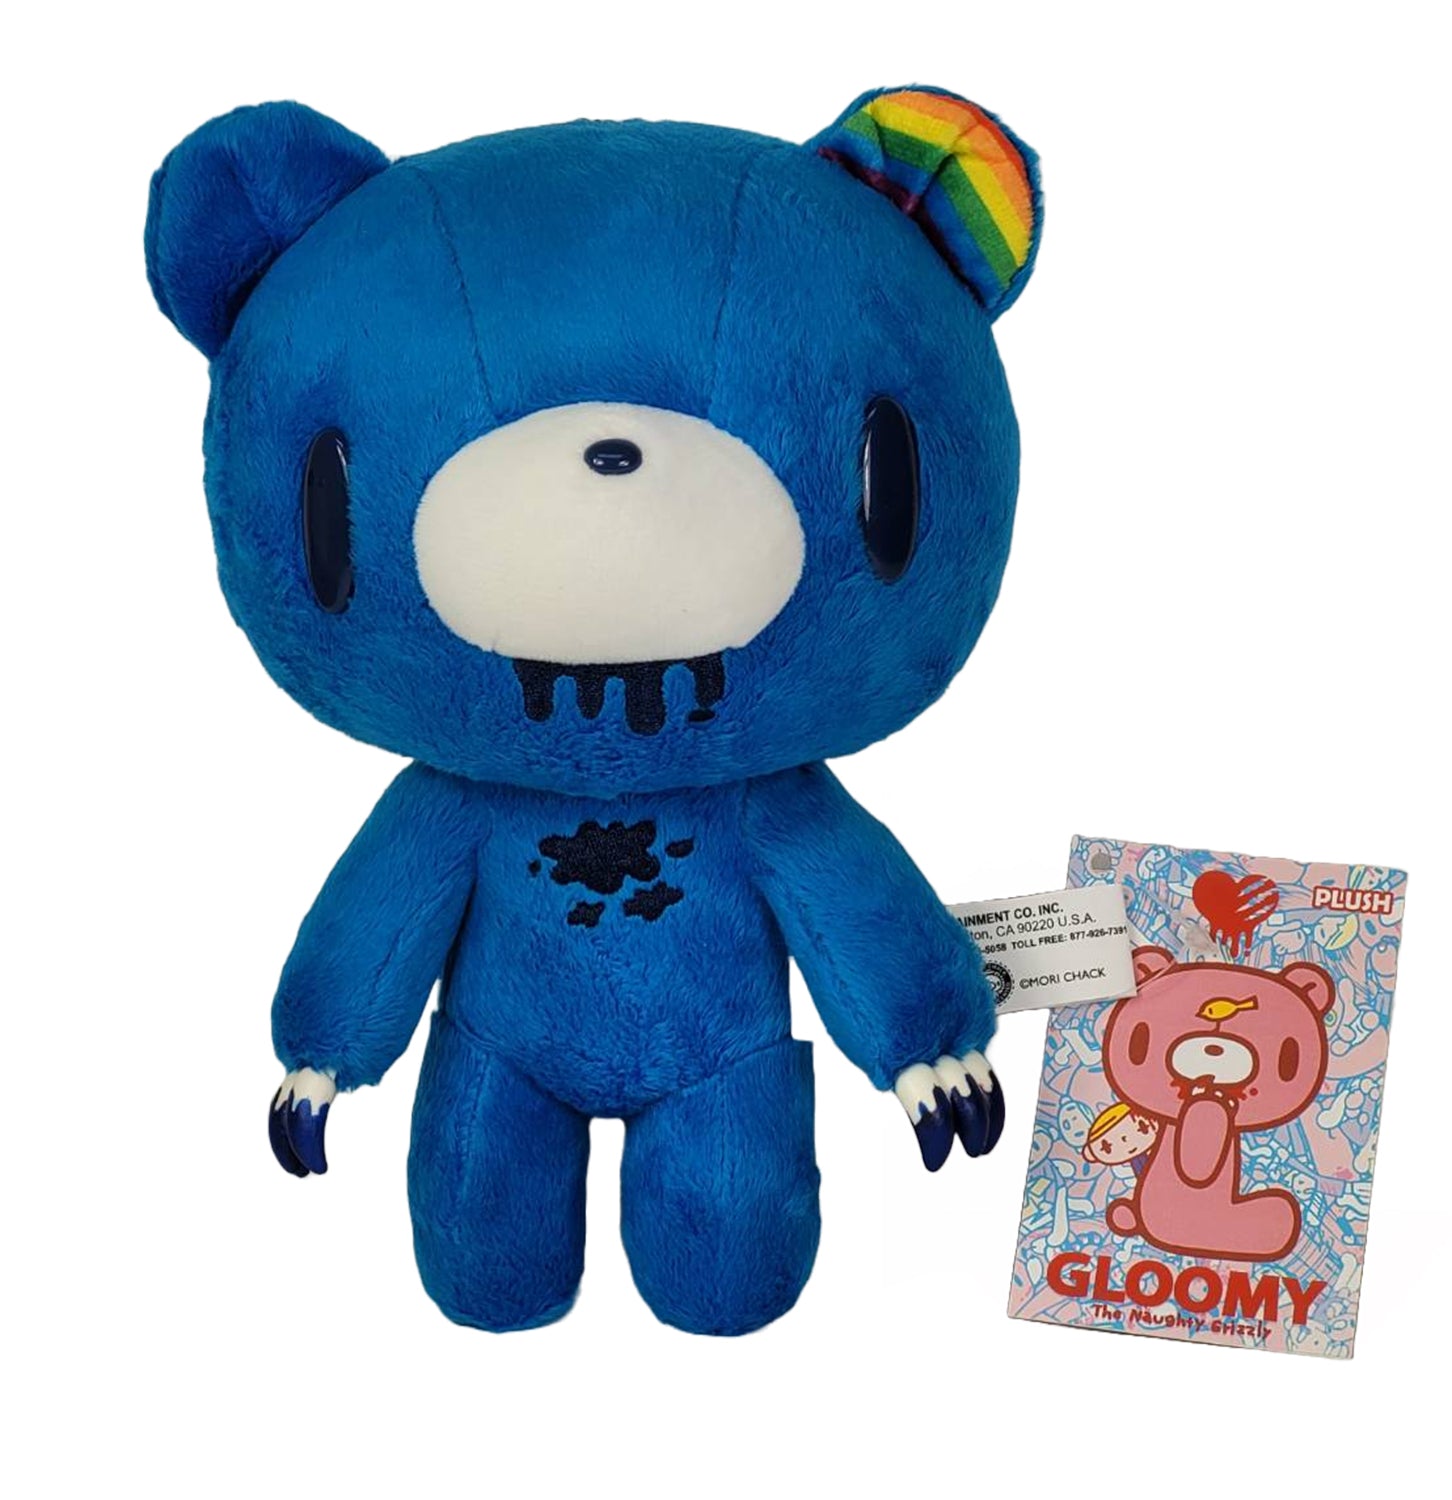 Blue gloomy bear with rainbow ear